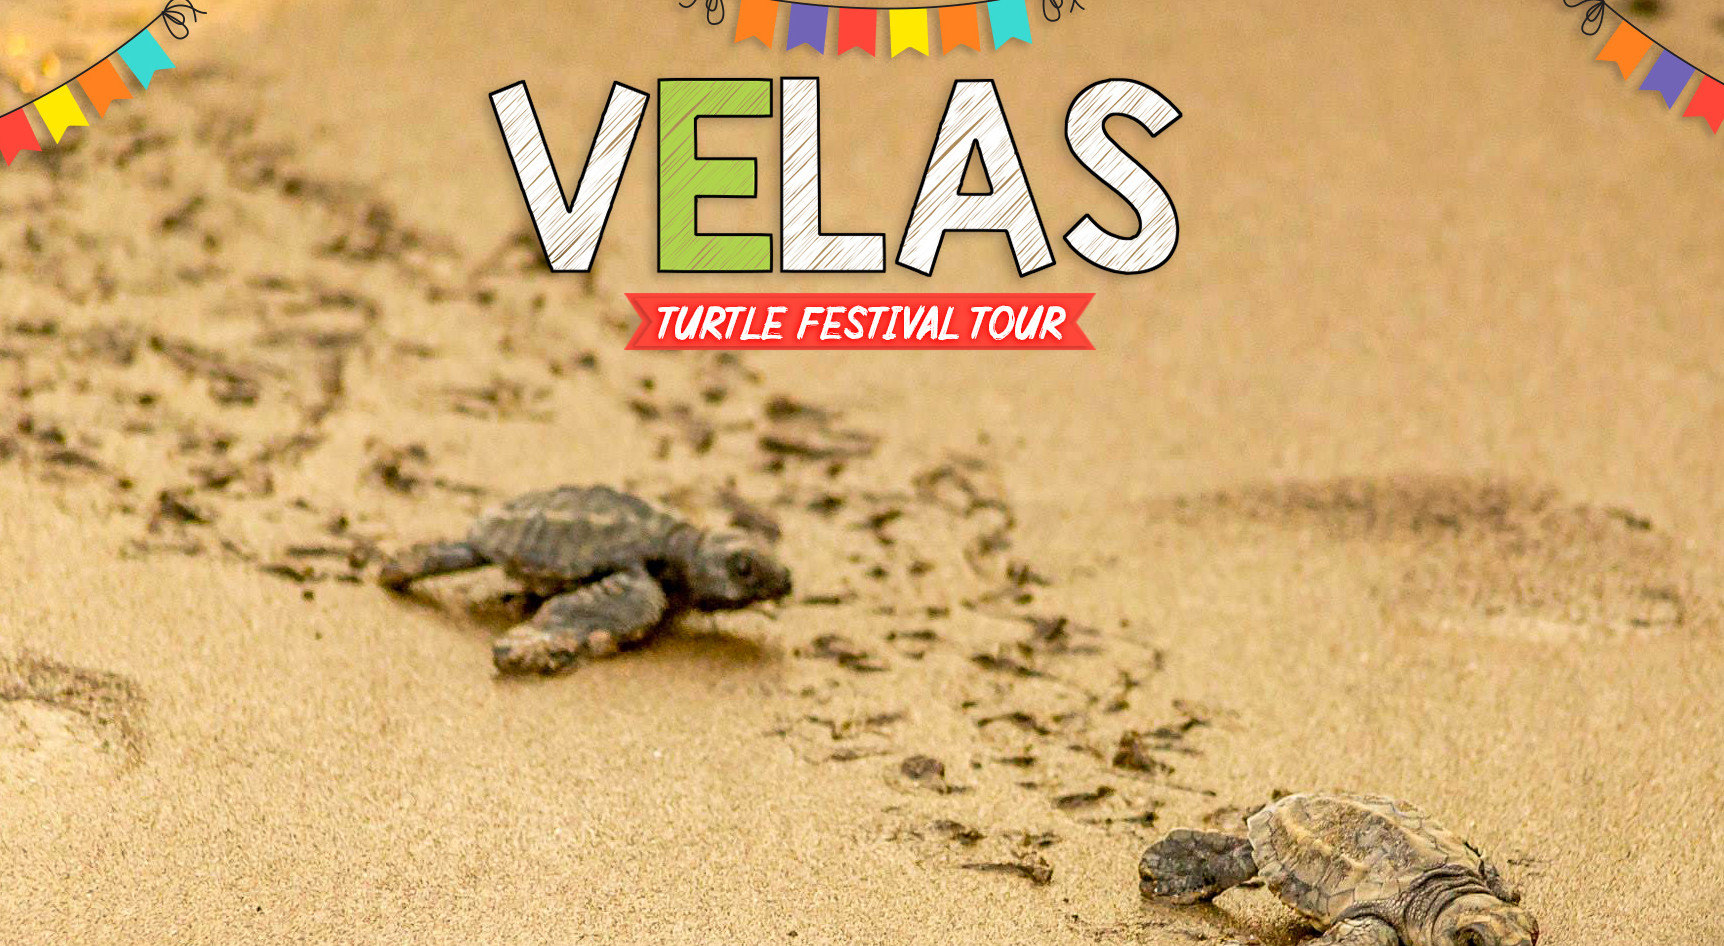 Velas Turtle Festival Tour with Trikon